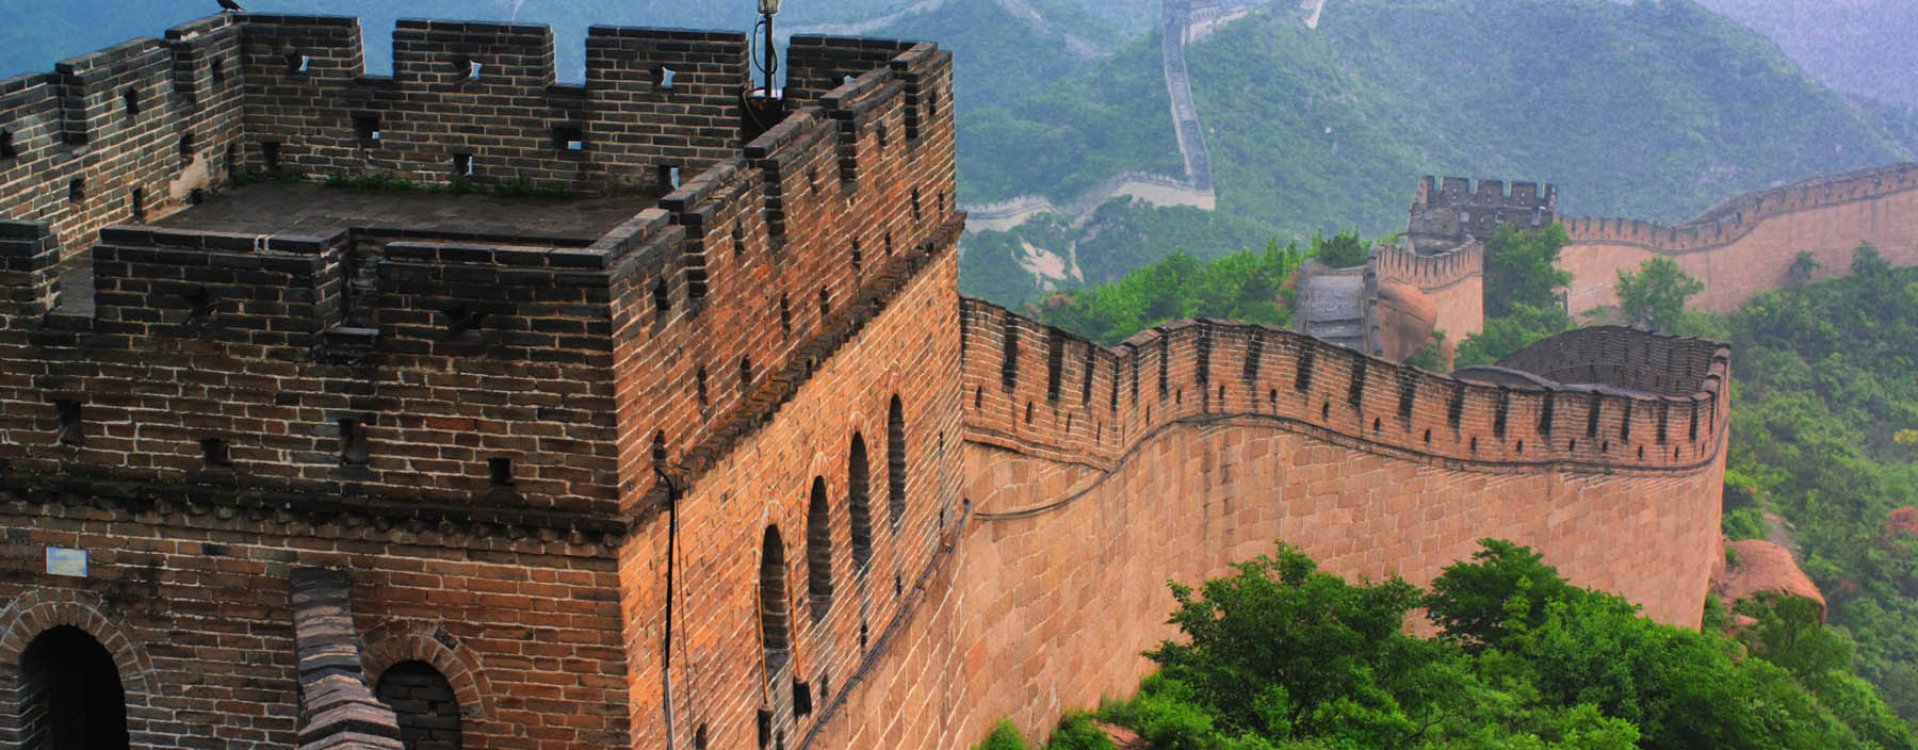 De Grote Muur, Beijing